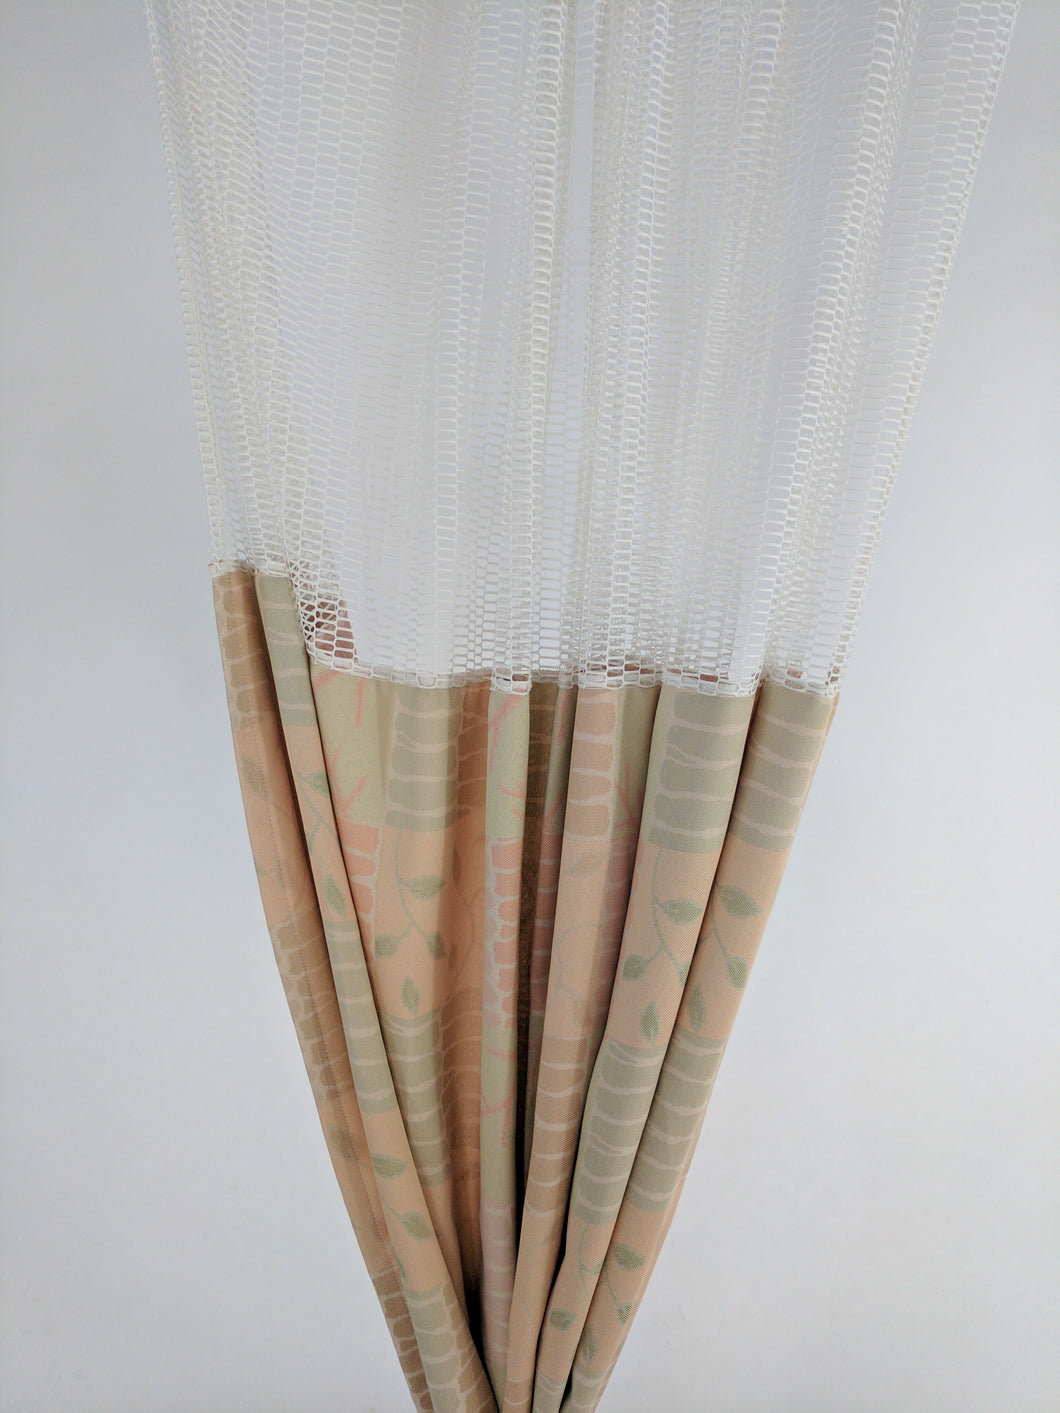 9405 - Vintage Patterned Hospital Bed Curtains